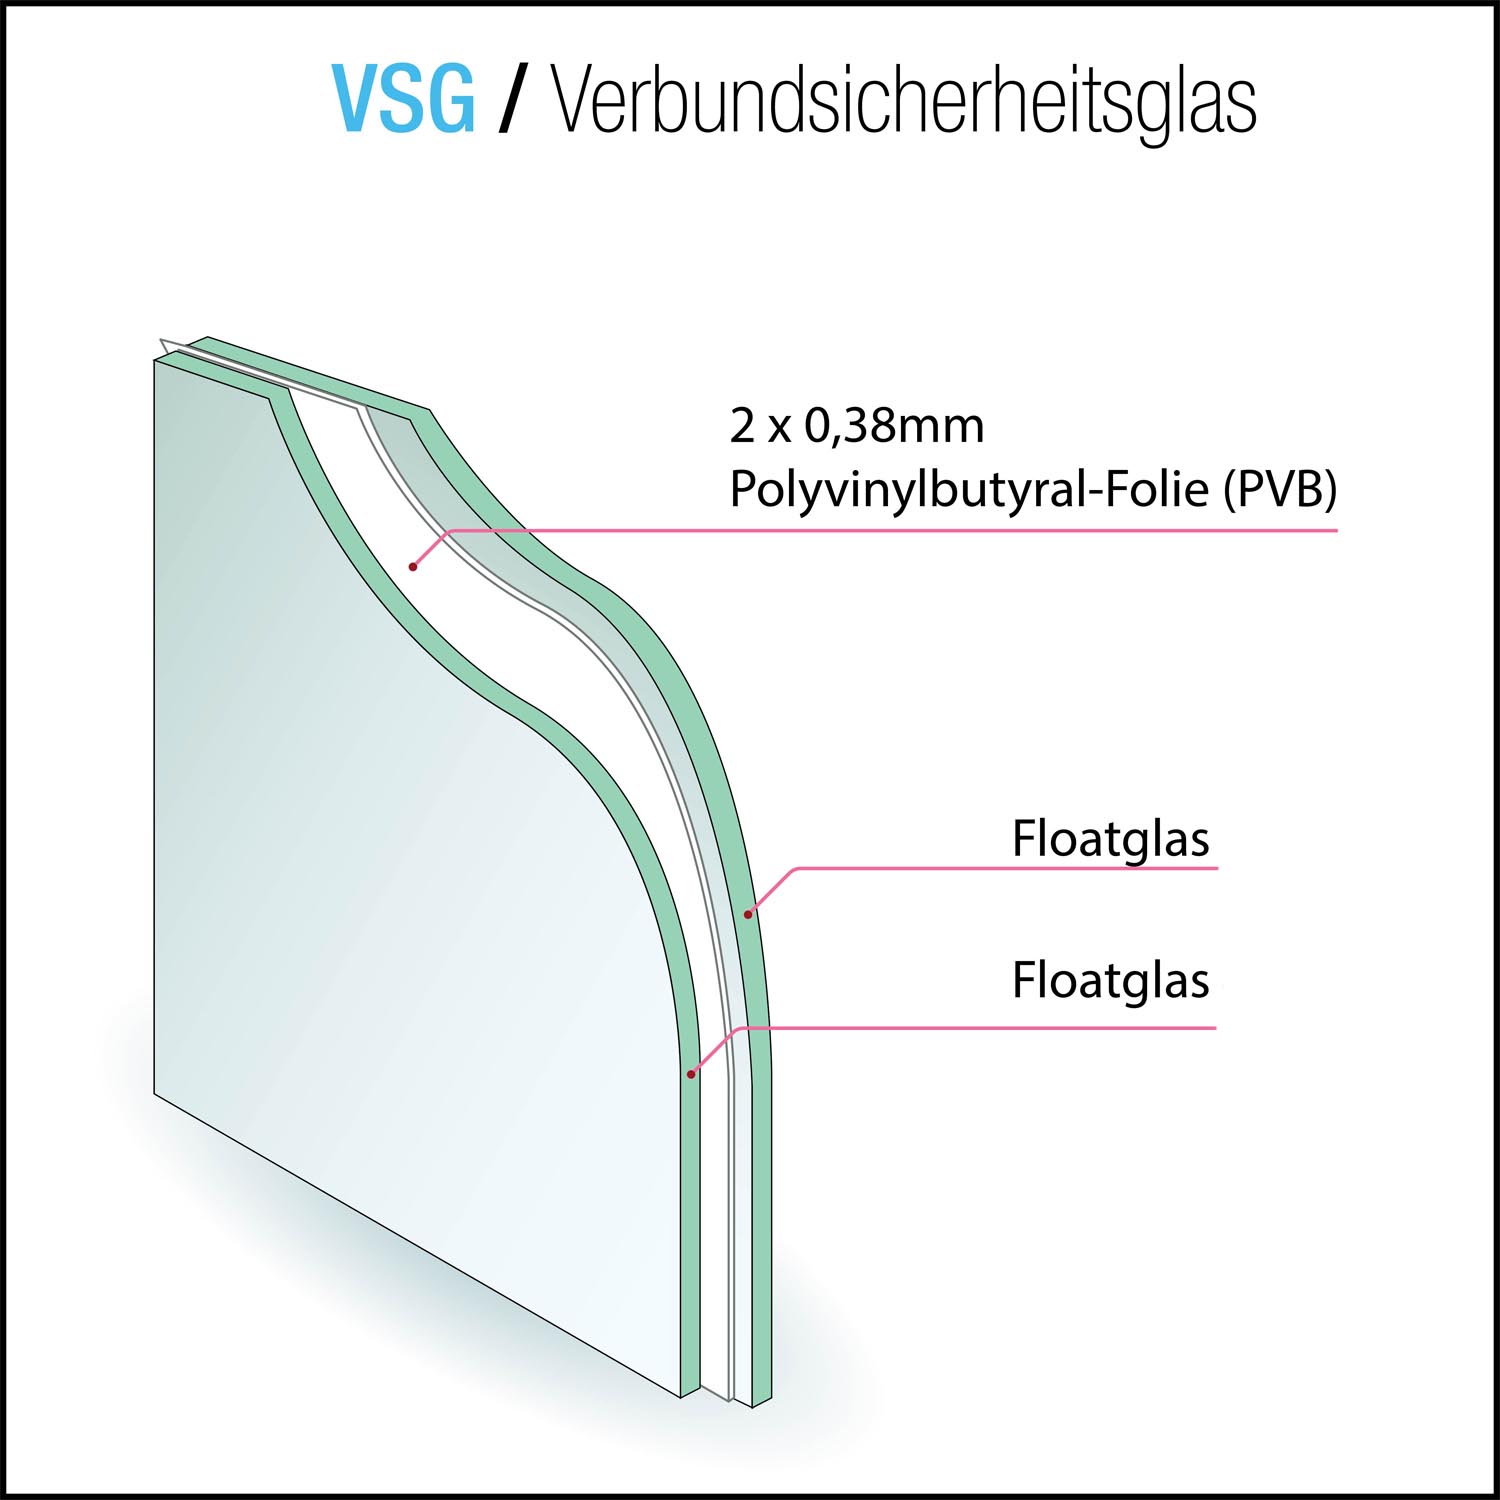 VSG aus Floatglas matt 10,76mm